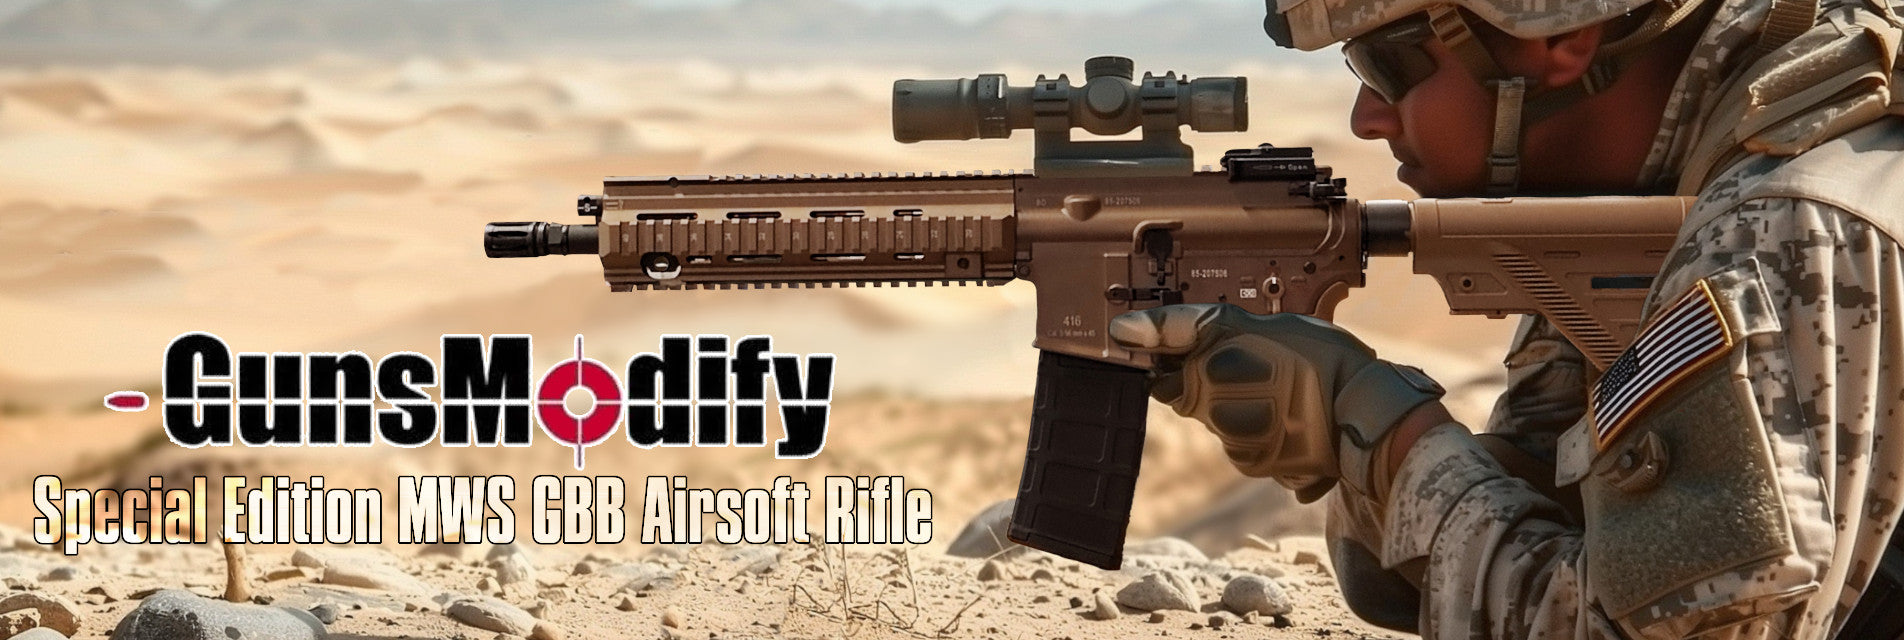 GunsModify MWS Rifle